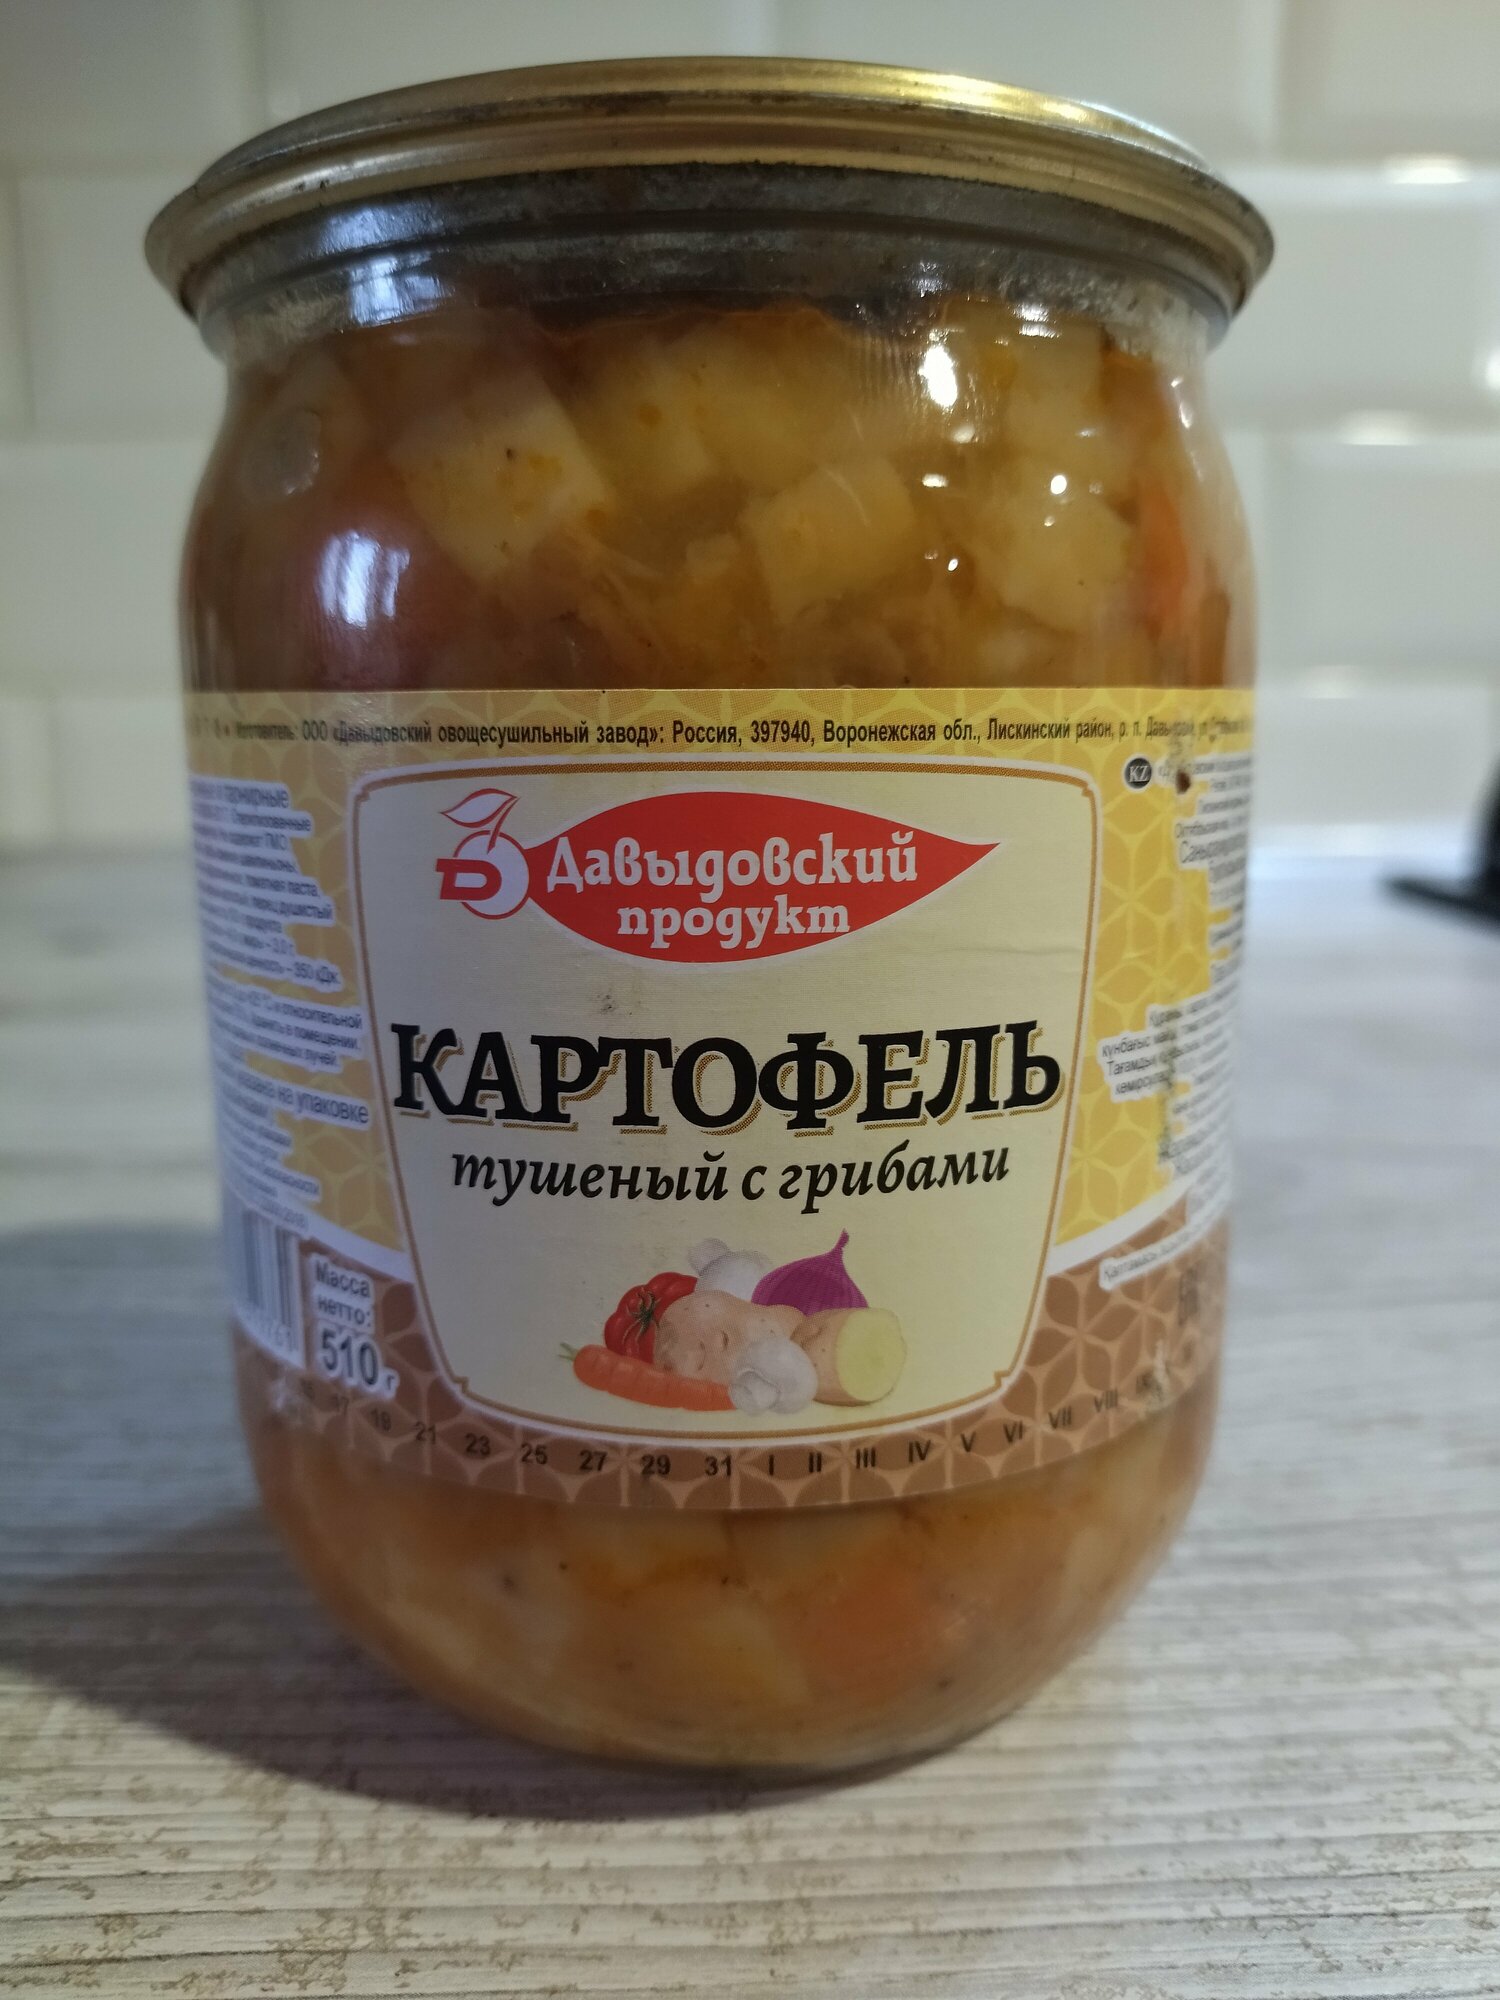 Картофель тушеный с грибами Давыдовский продукт 510 гр 2 шт